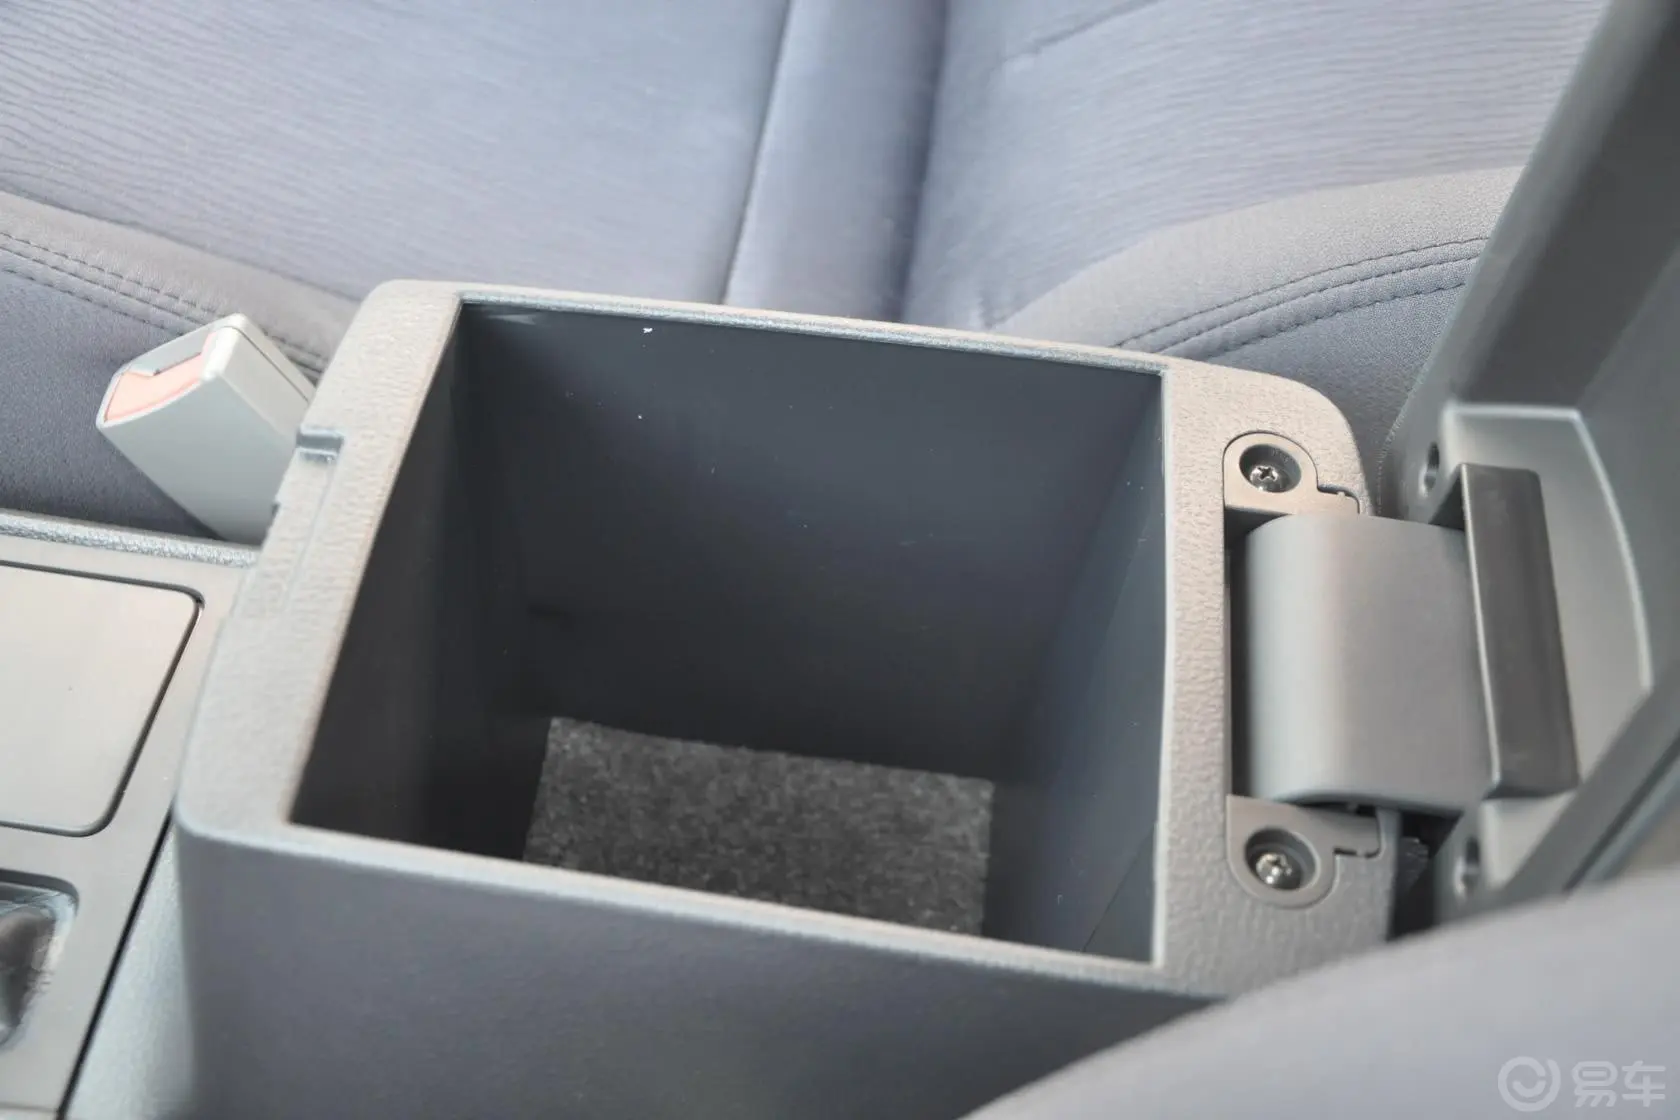 众泰Z3001.5L 手动 舒适型前排中央扶手箱空间